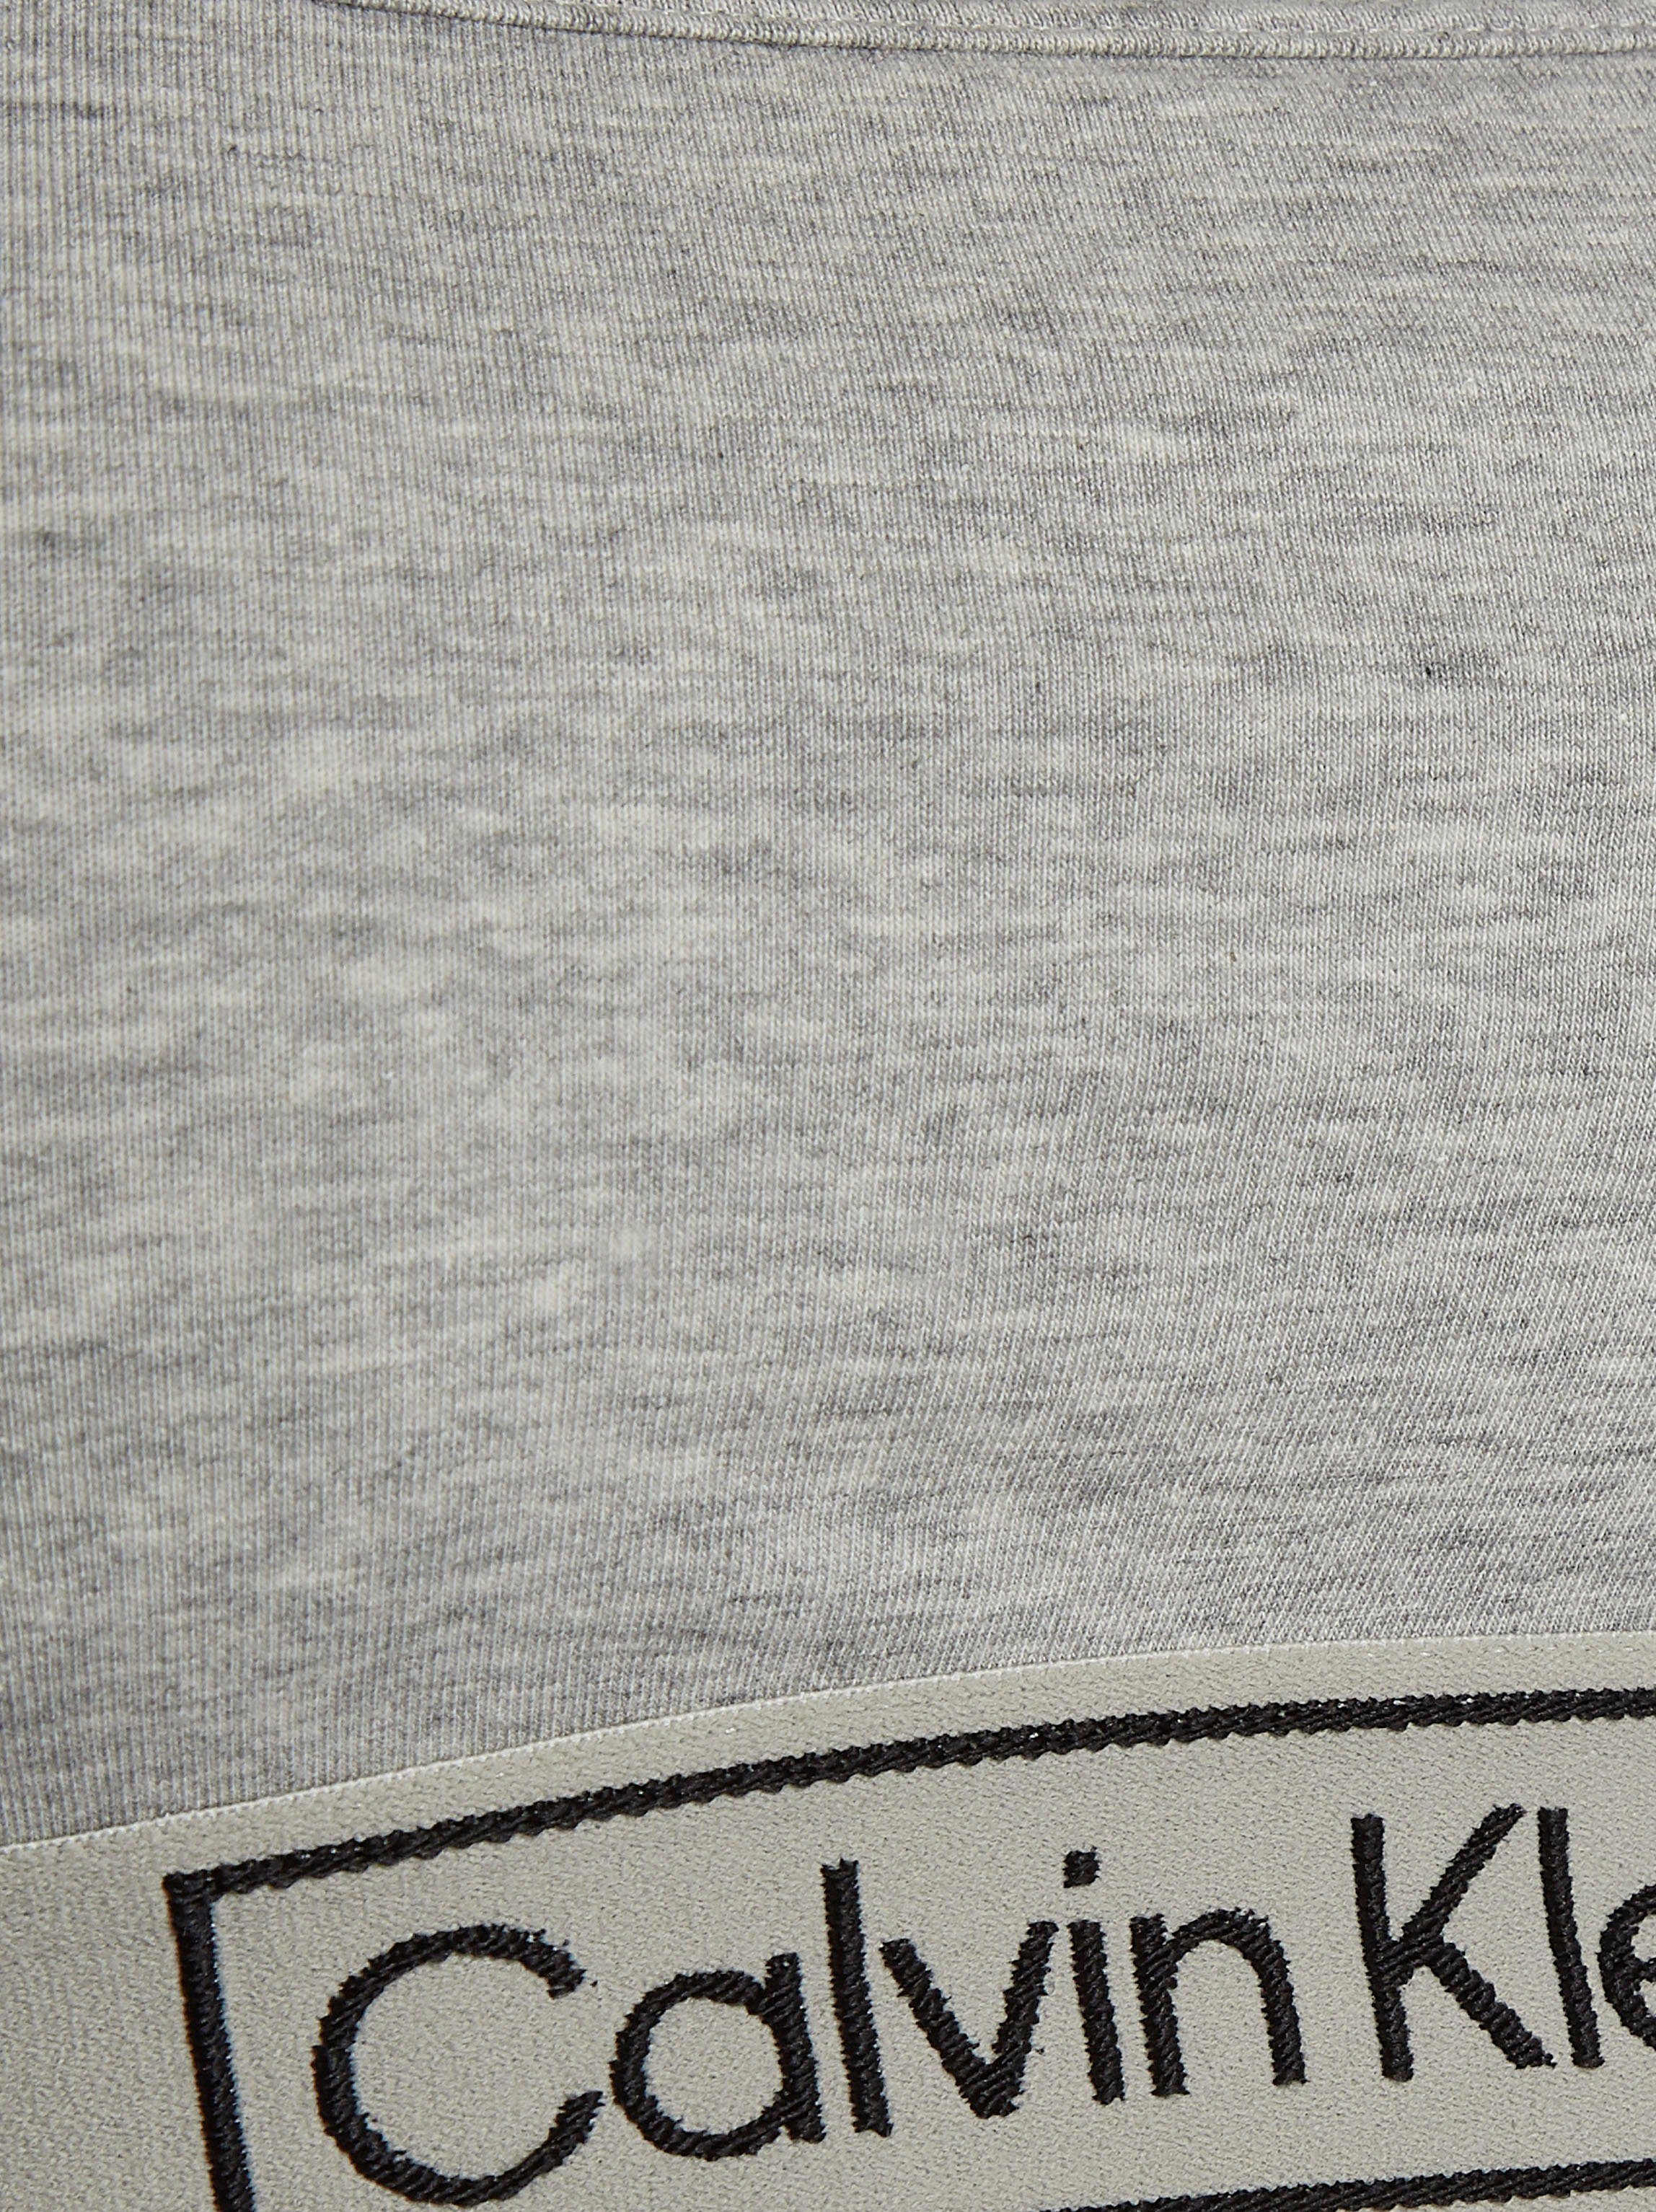 Klein Calvin Logoschriftzug grau Underwear Bustier mit